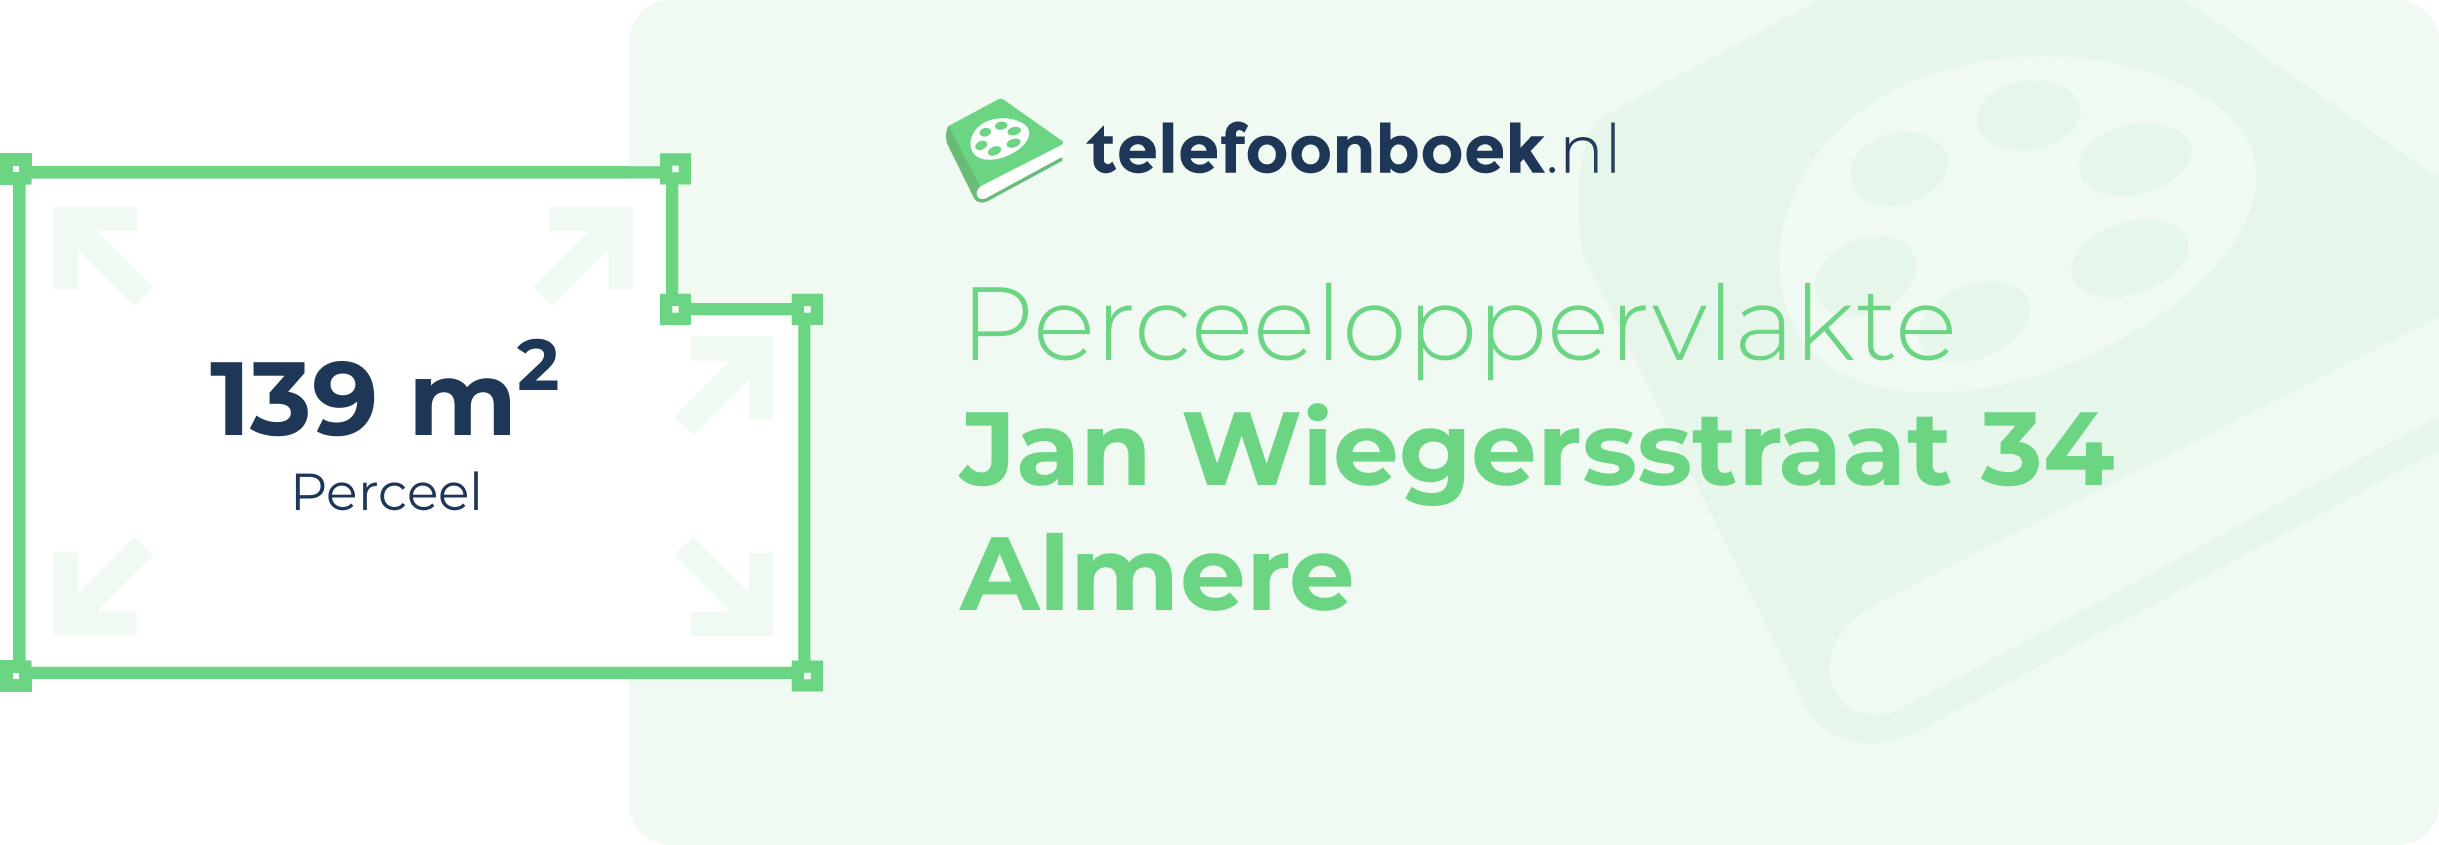 Perceeloppervlakte Jan Wiegersstraat 34 Almere